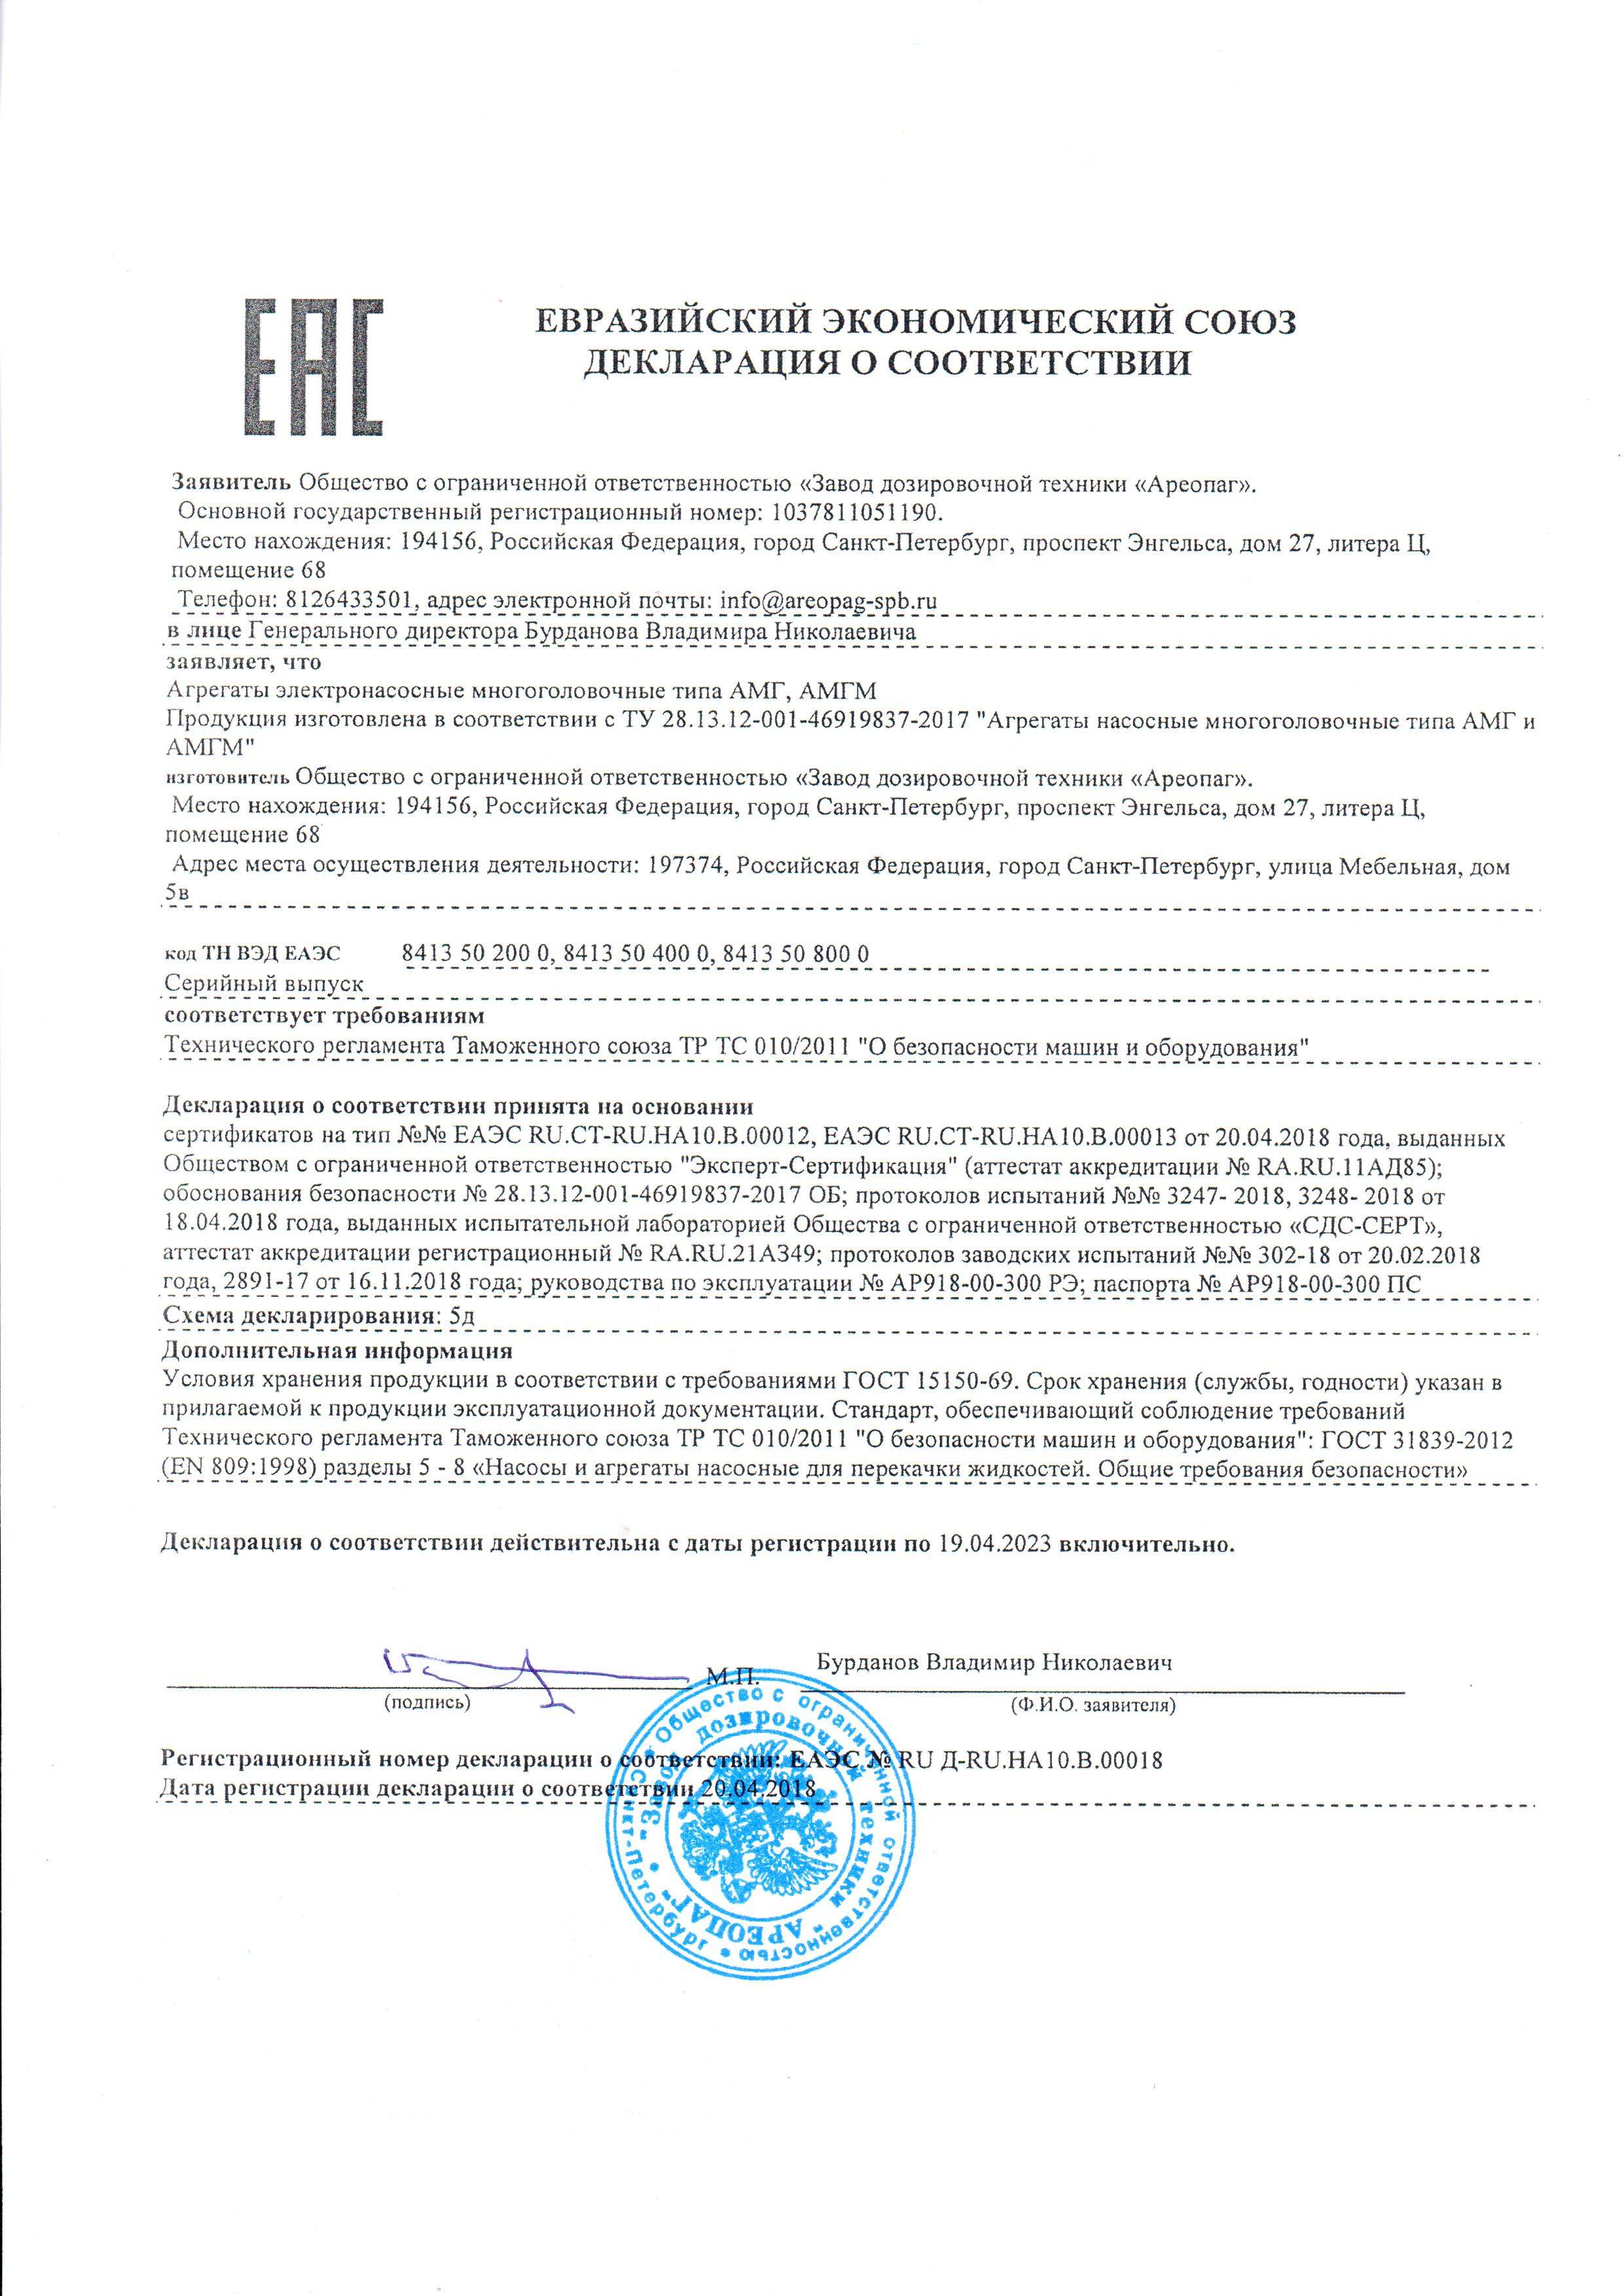 Декларация о соответствии ЕАЭС № RU Д-RU НА10 В 00018. Агрегаты электронасосные многоголовочные типа АМГ, АМГМ.